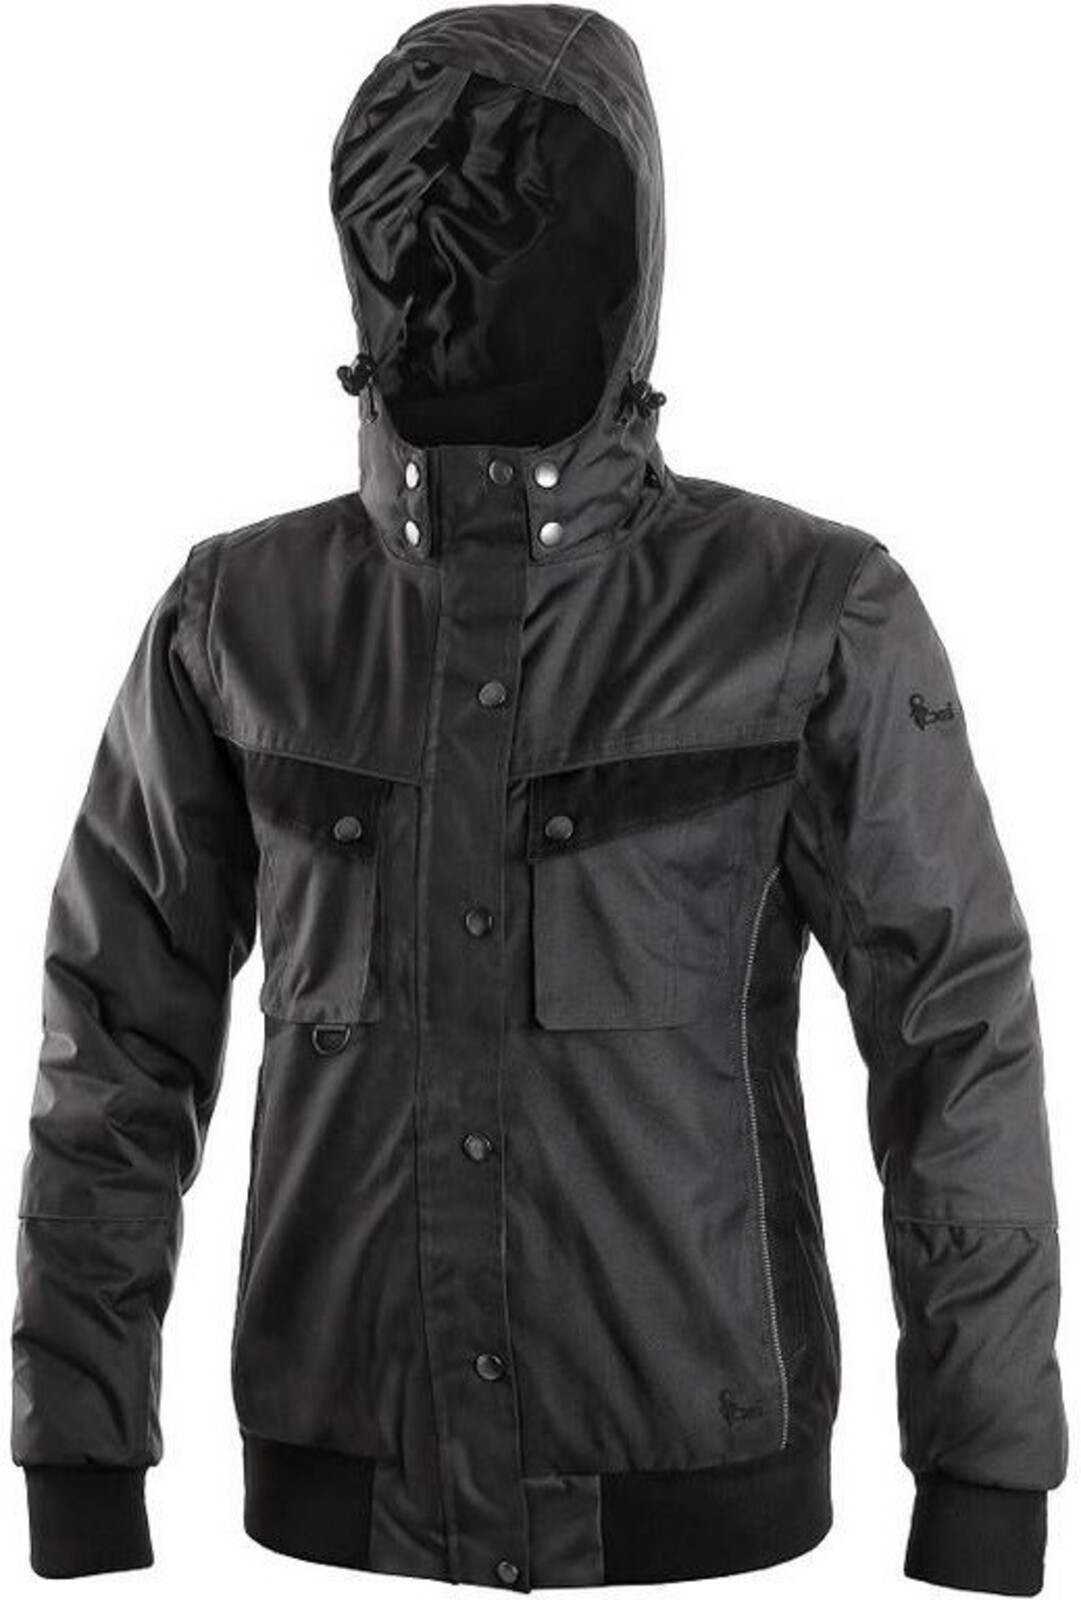 Dámska zimná bunda CXS Irvine 2v1 - veľkosť: M, farba: sivá/čierna